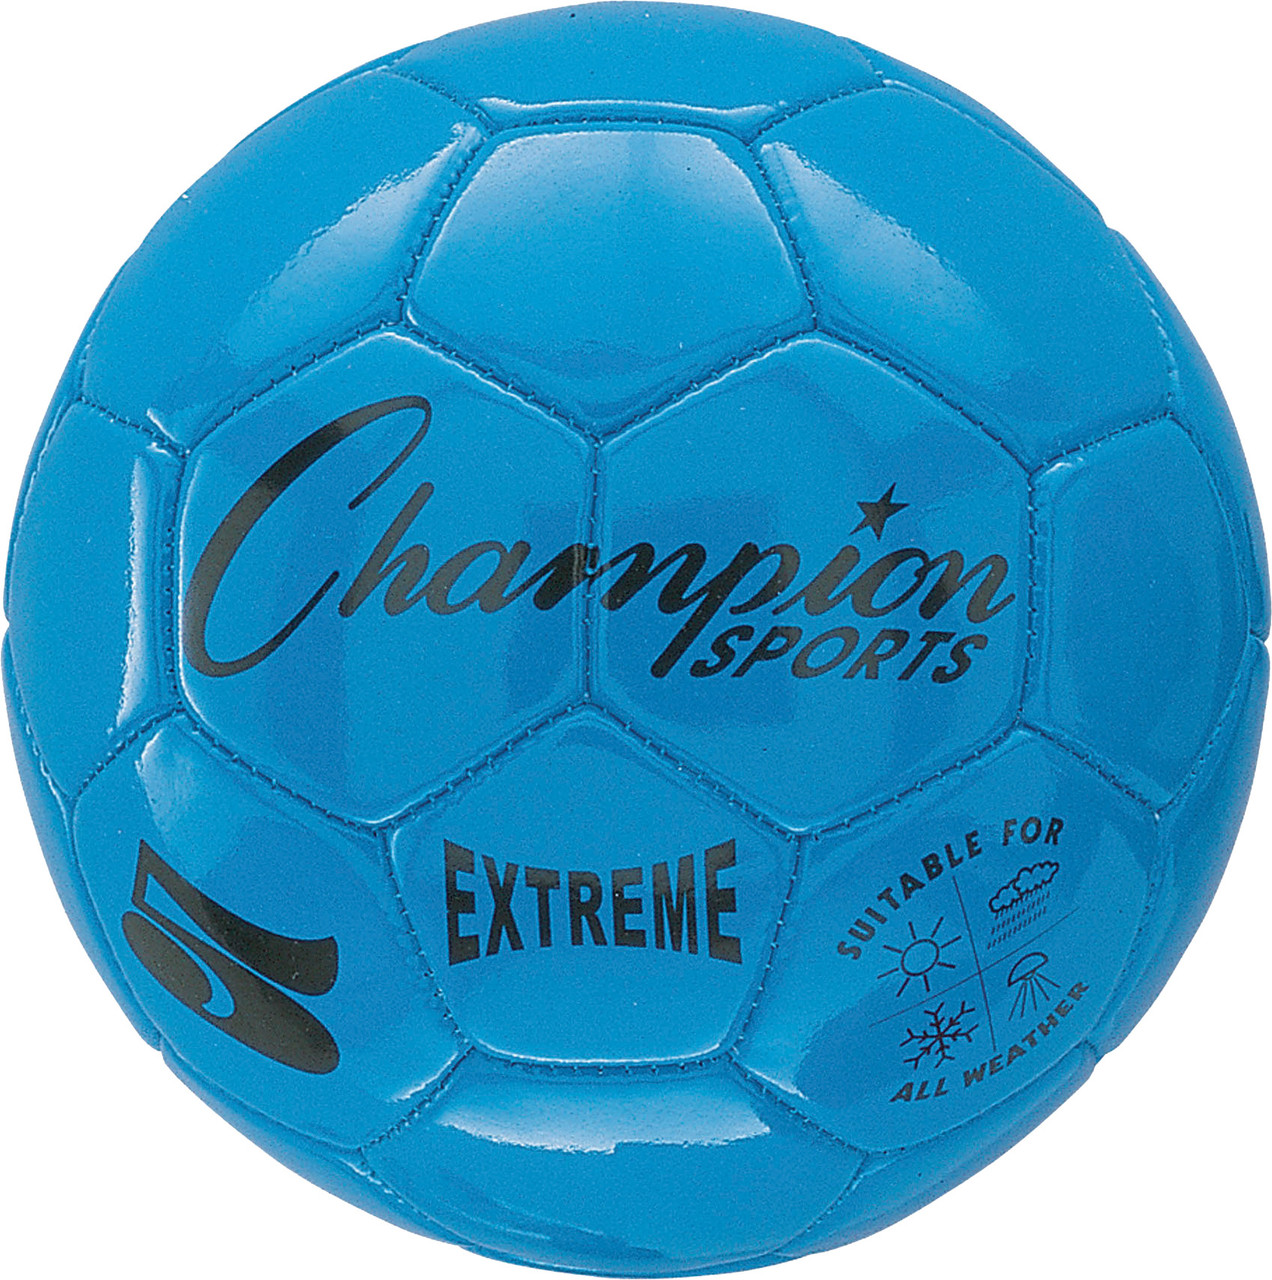 Champion Sports extrêmes Tie Dye Taille 5 Soft Touch composite Ballon de football EXTD5